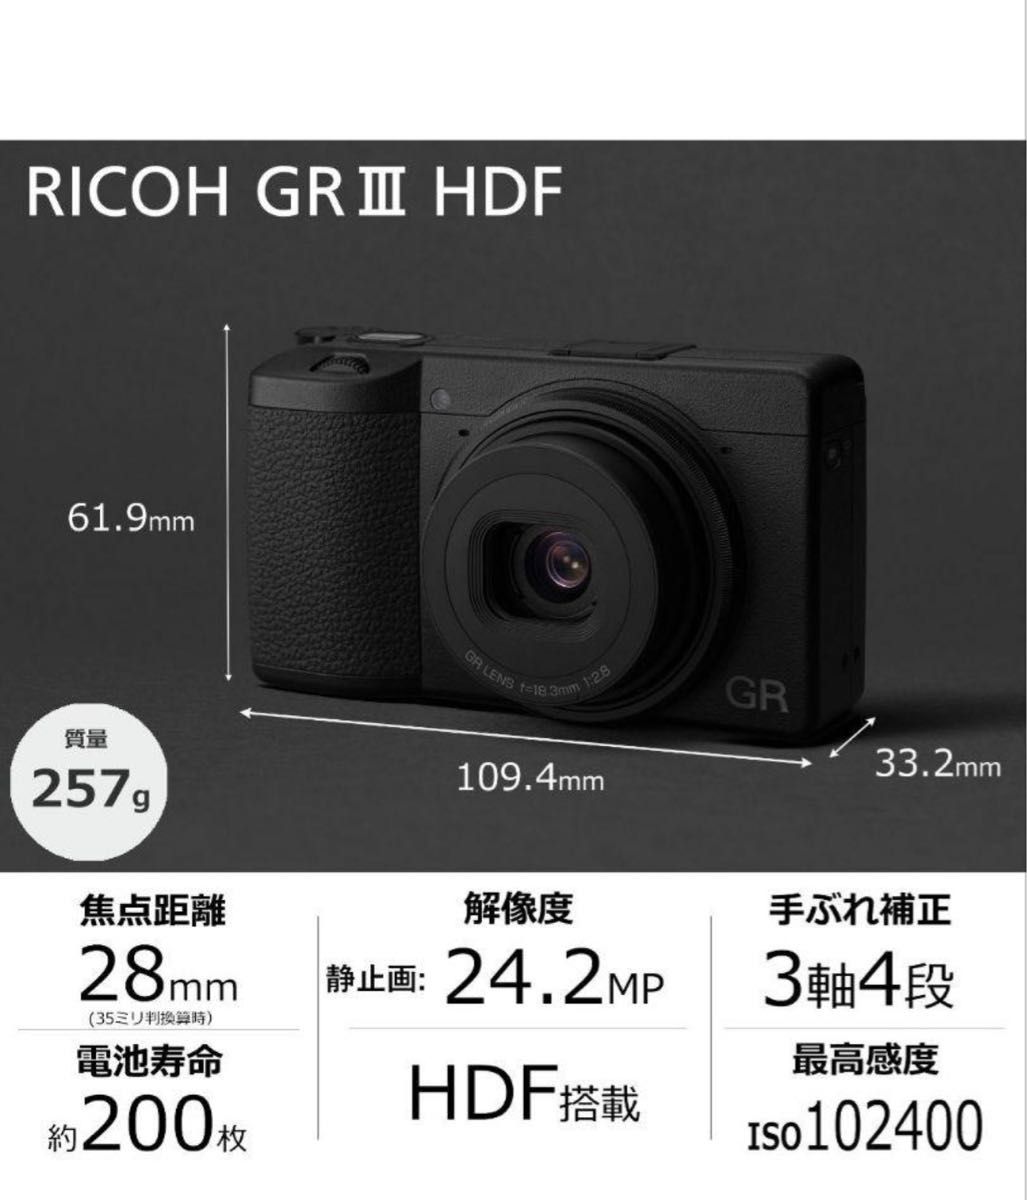 RICOH GR III HDF 特別モデル デジタルカメラ 安心3年保証